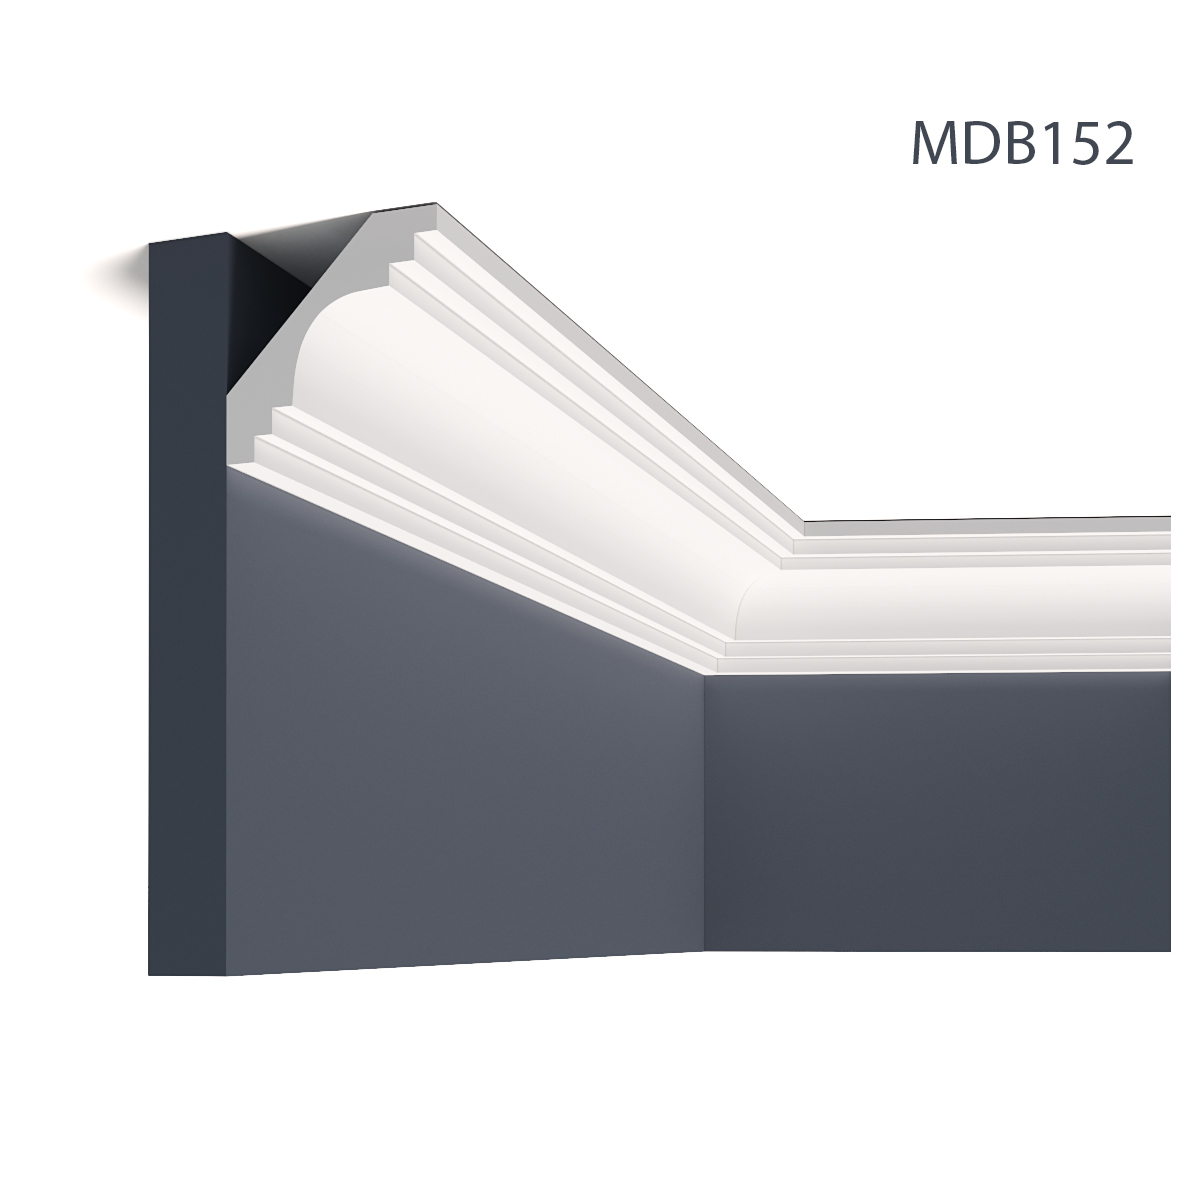 Profile Decorative Mardom Decor MRD-MDB152. Conține culorile: